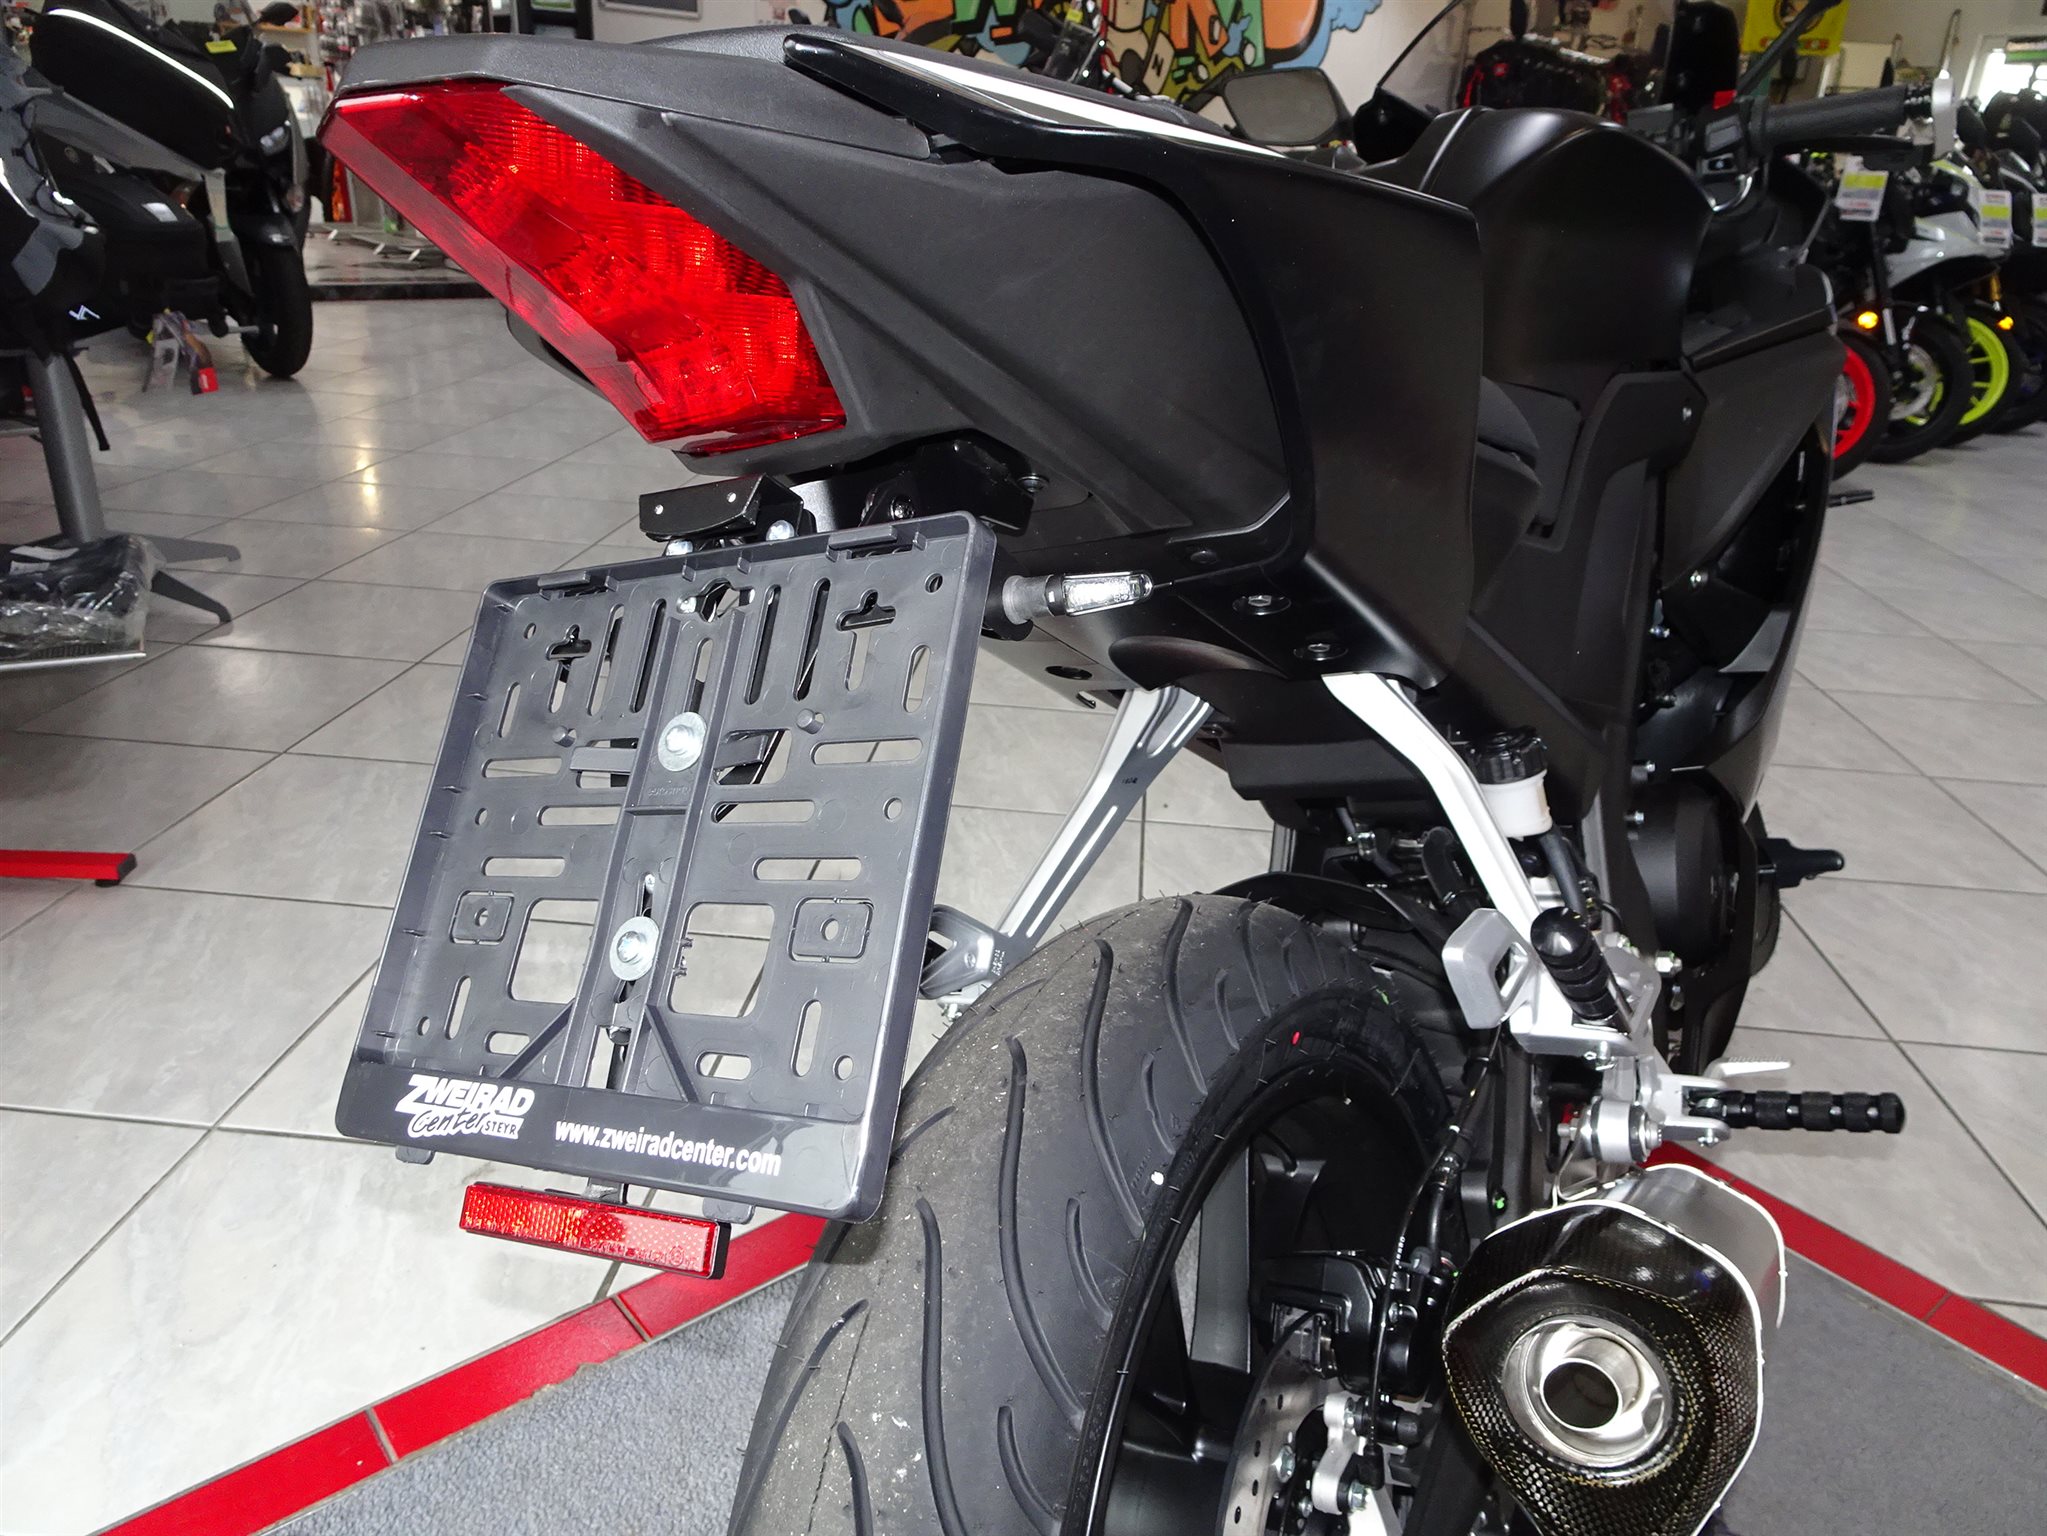 Details zum Custom-Bike Yamaha R125 des Händlers Zweirad Zentrum